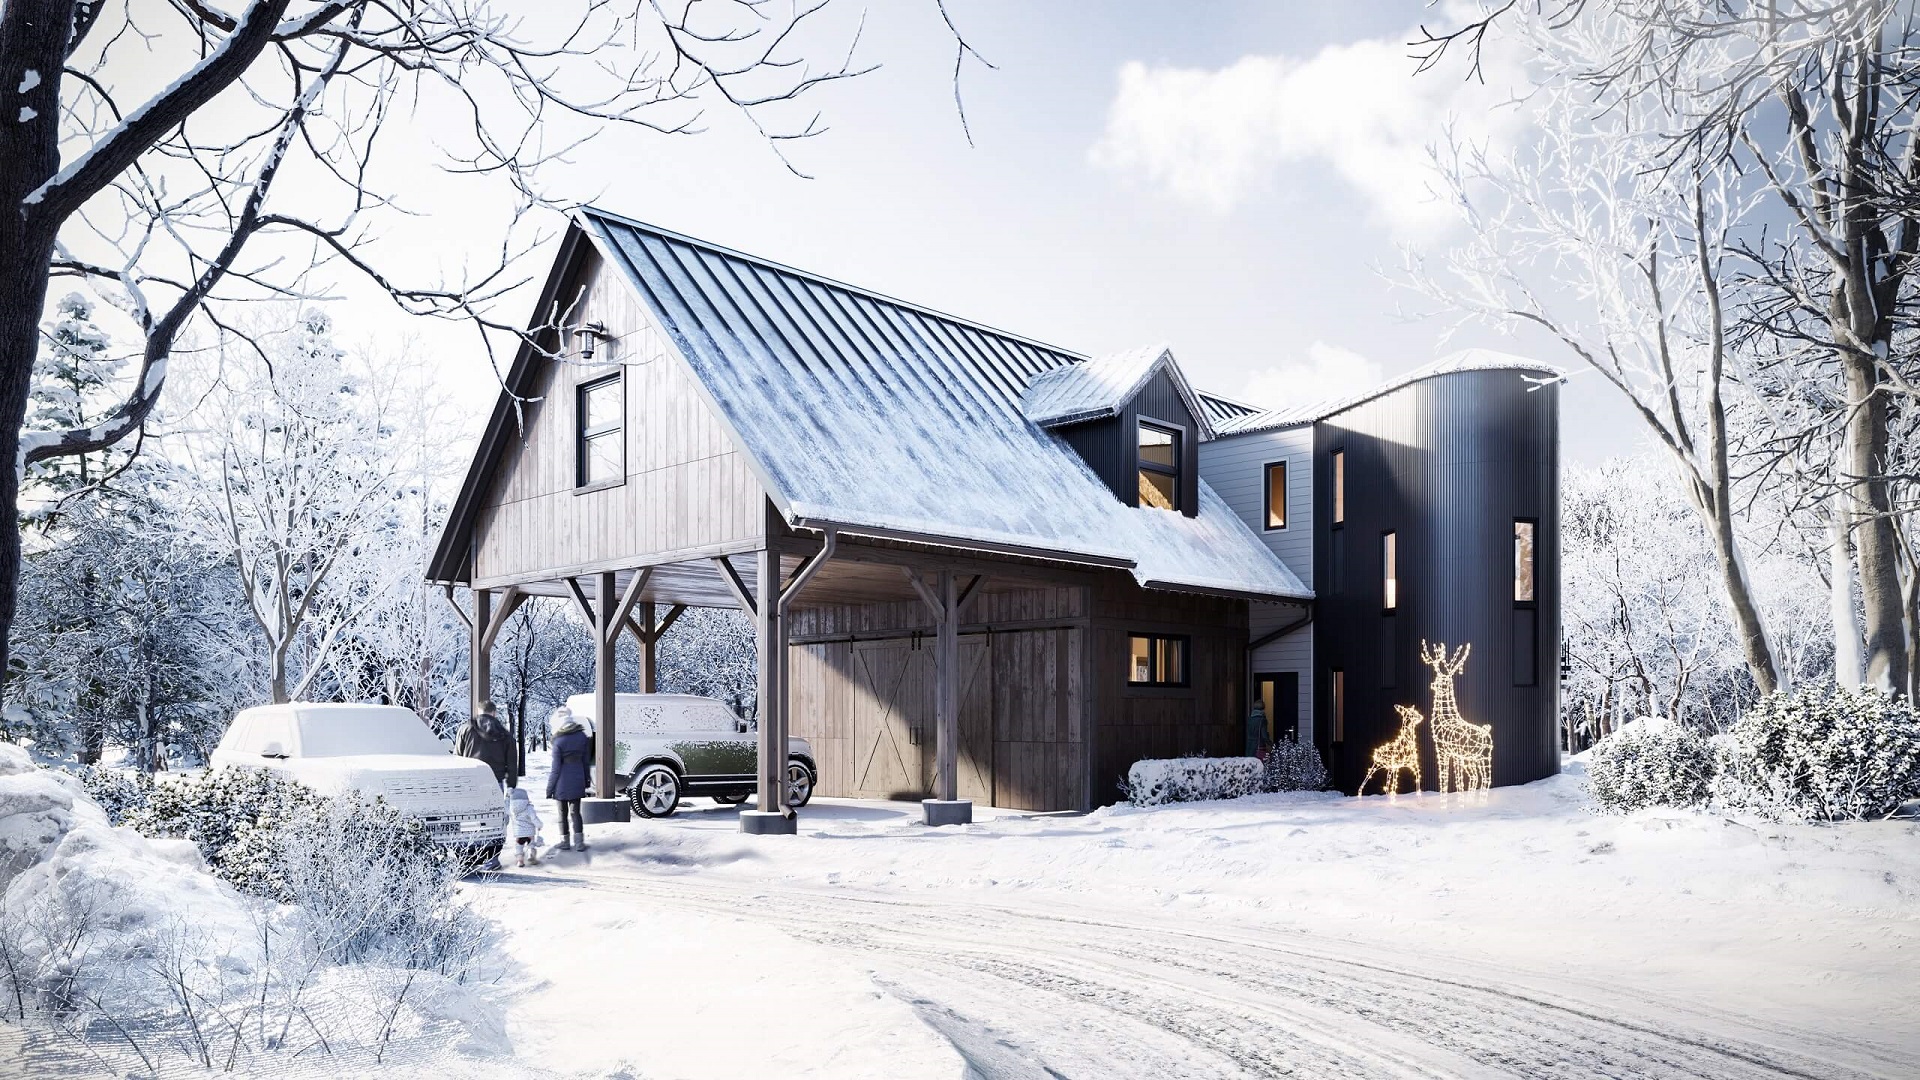 Seasonal Winter CGI for Real Estate